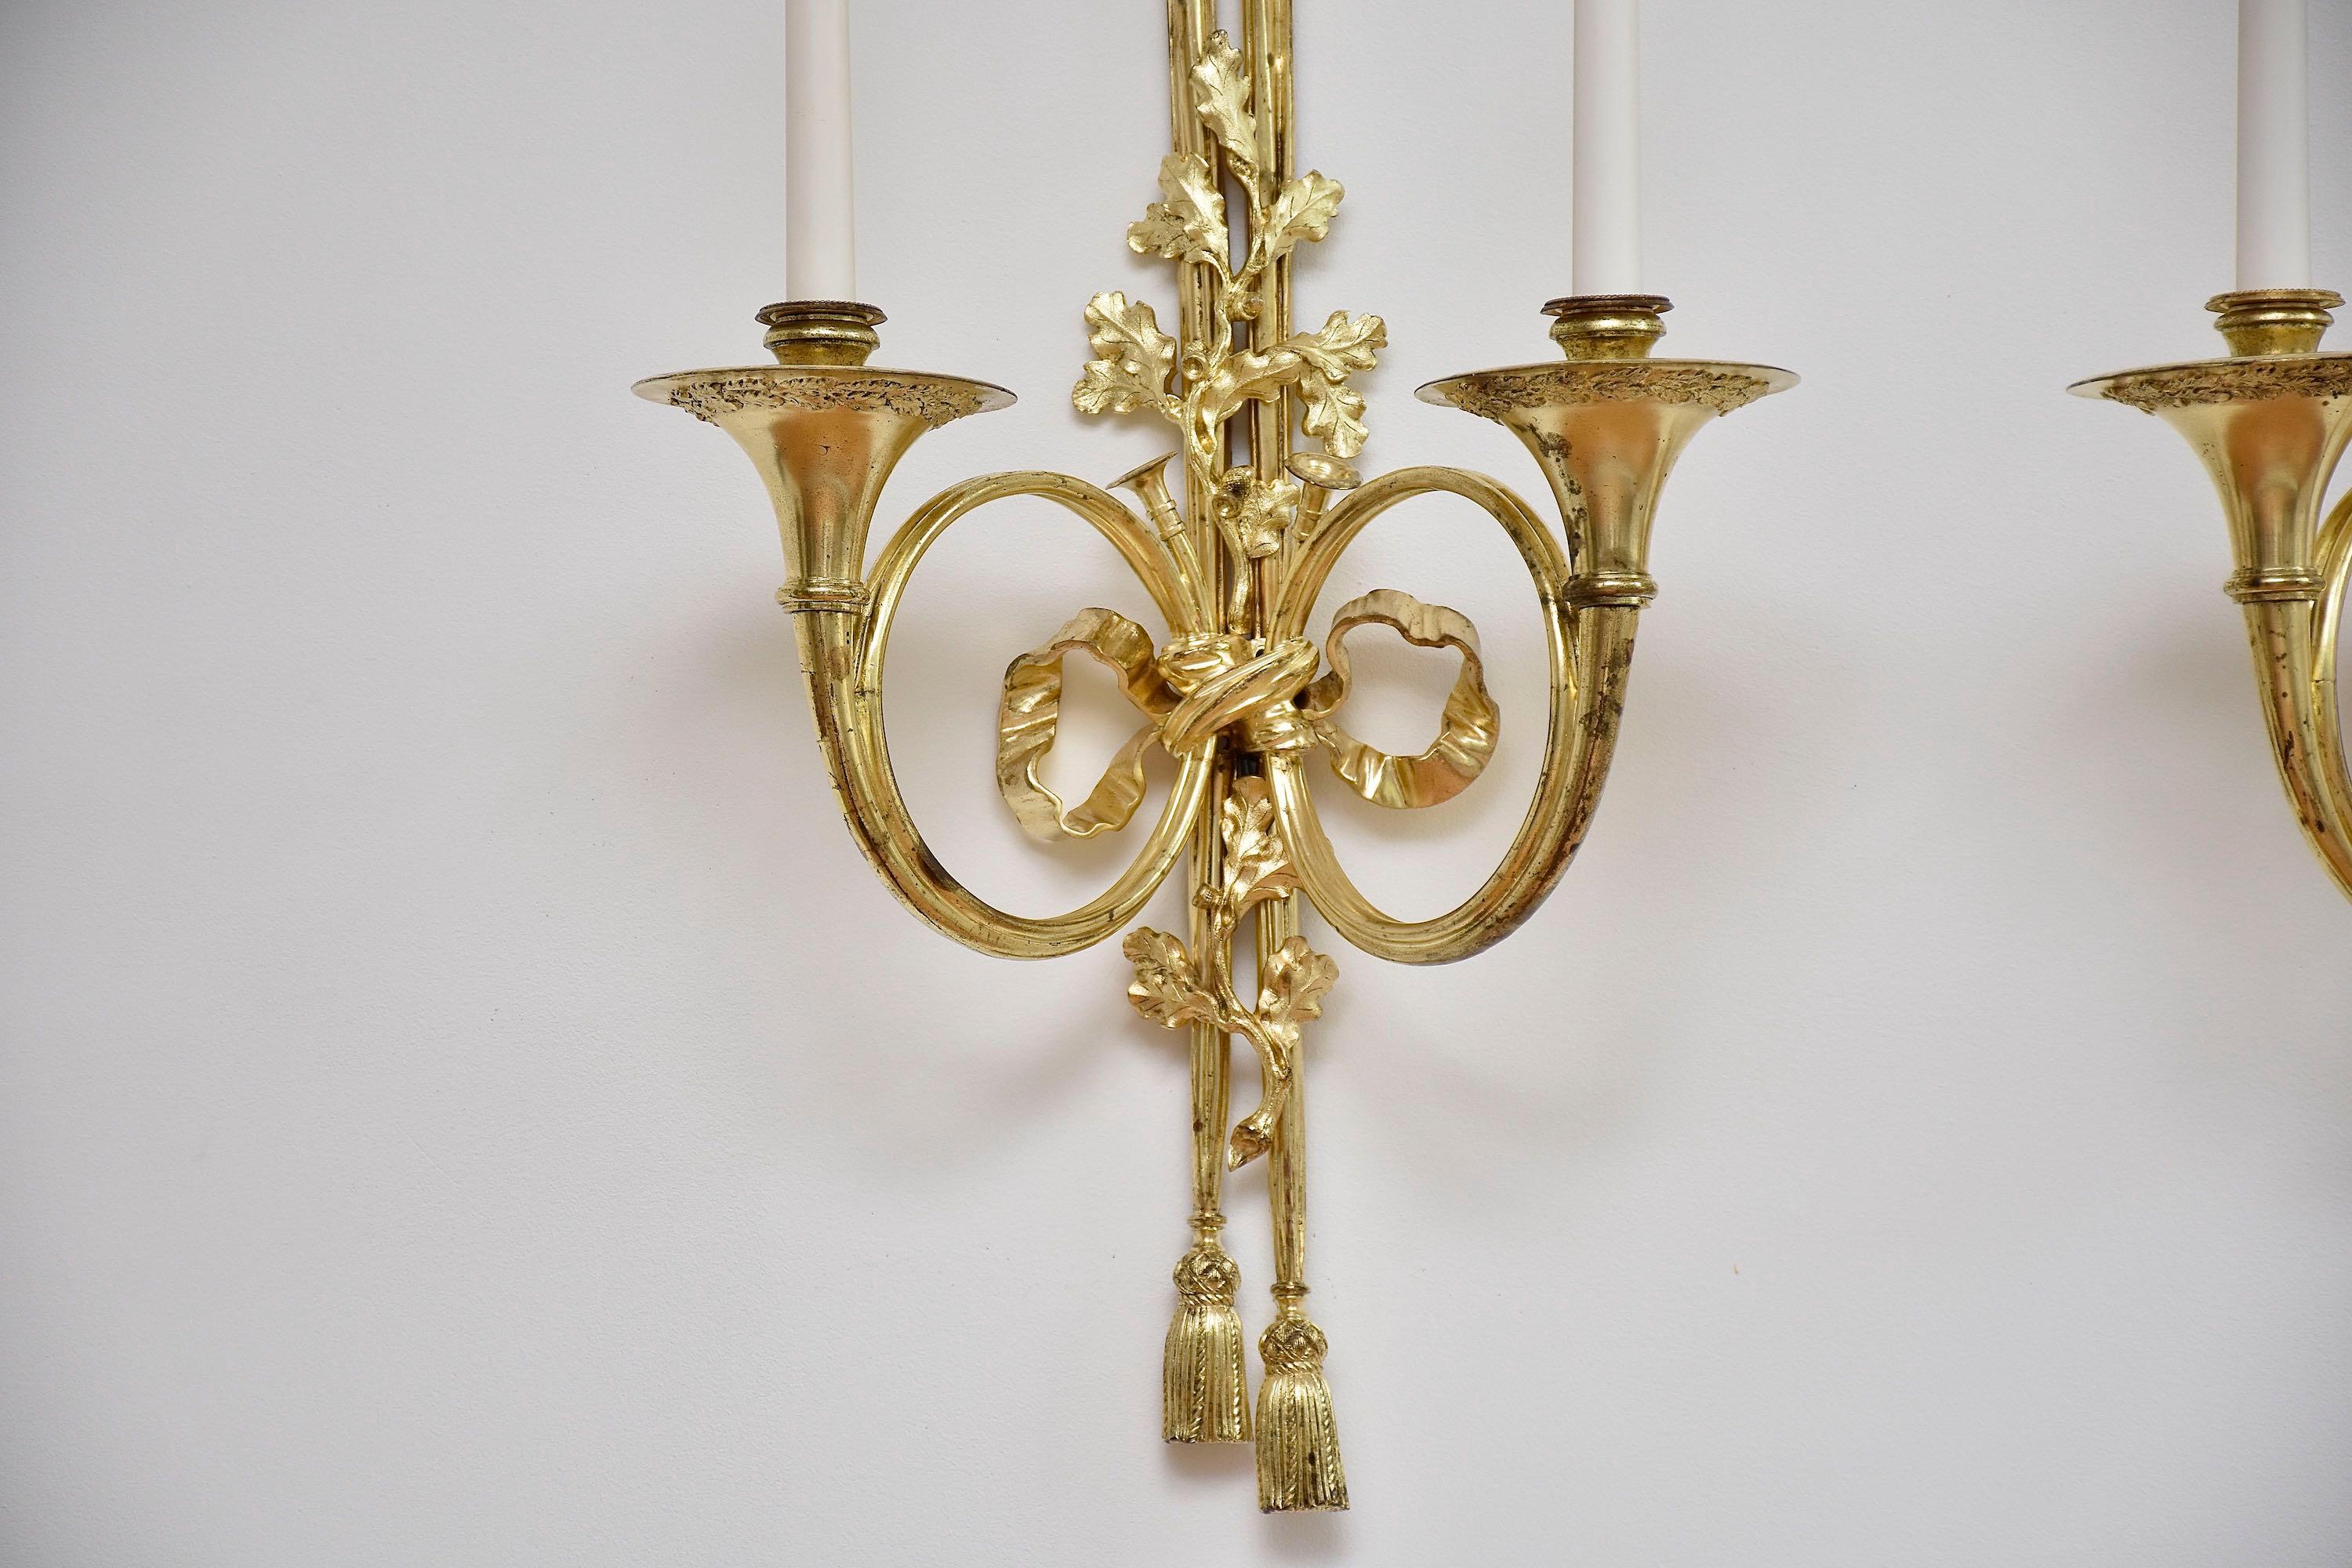 Ein schönes und sehr beeindruckendes Paar französischer zweiflammiger Wandapplikationen im Stil Louis XVI.
Jeweils mit Rückwand in Form von mit Quasten versehenen Draperien, die mit verschlungenen Eichenzweigen, einem Schleifenband und zwei Hörnern